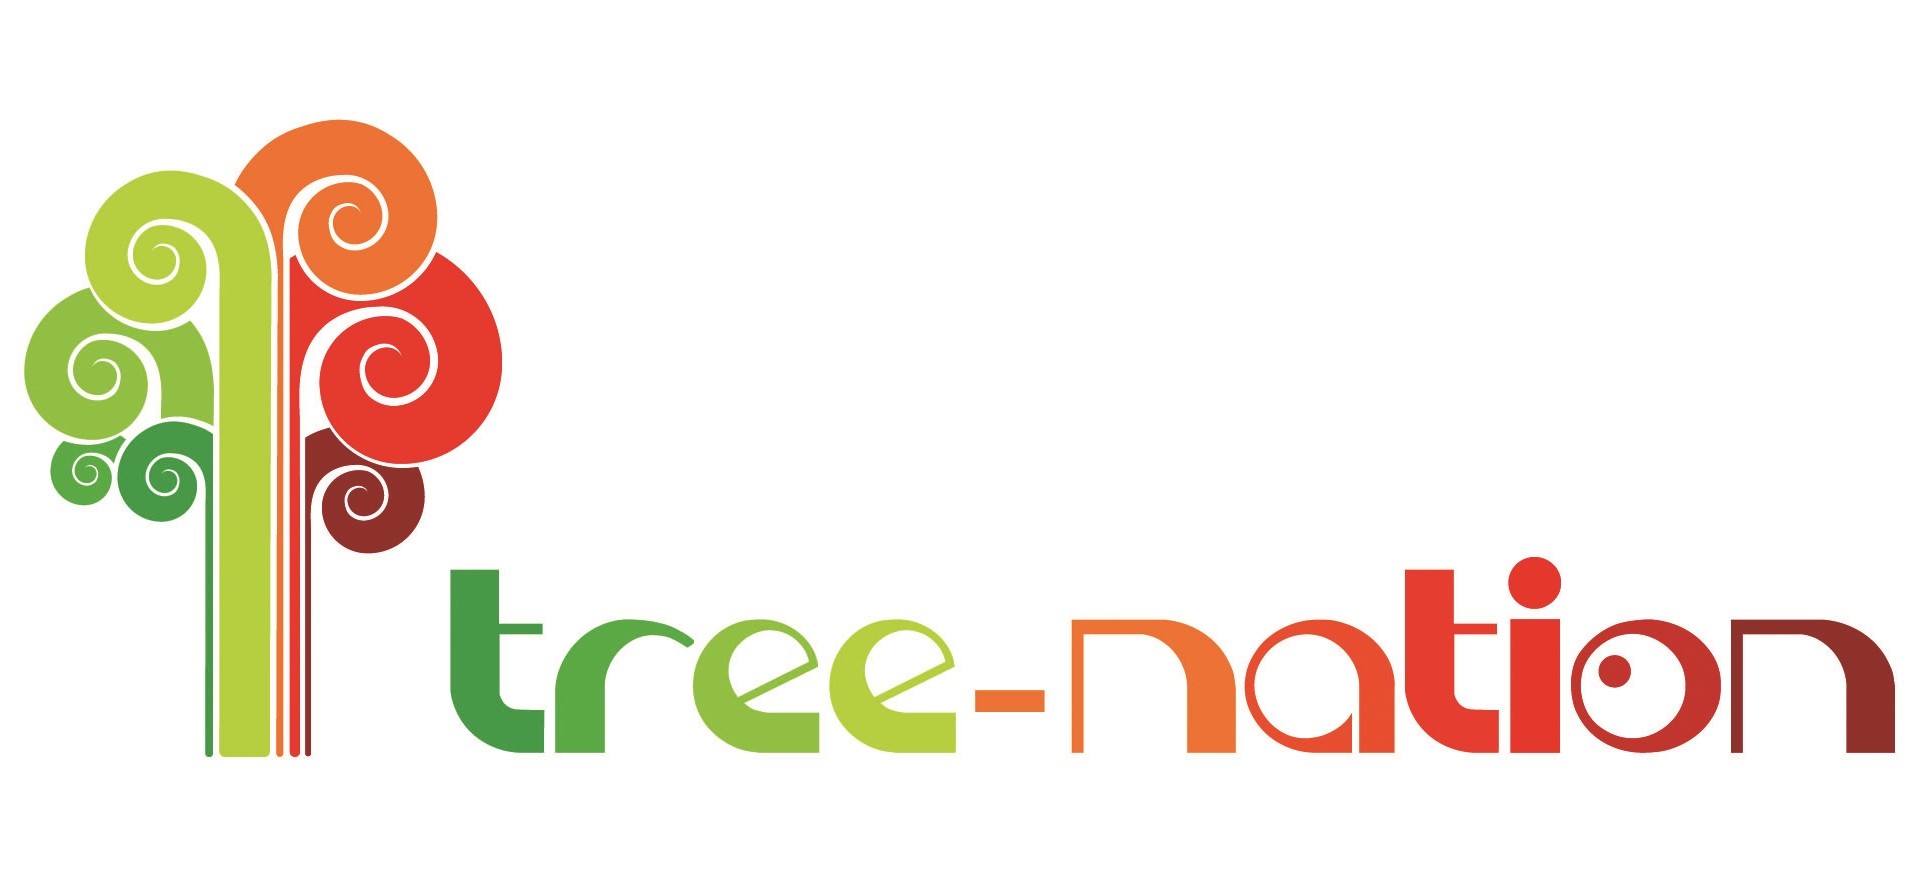 Tree Nation Logo